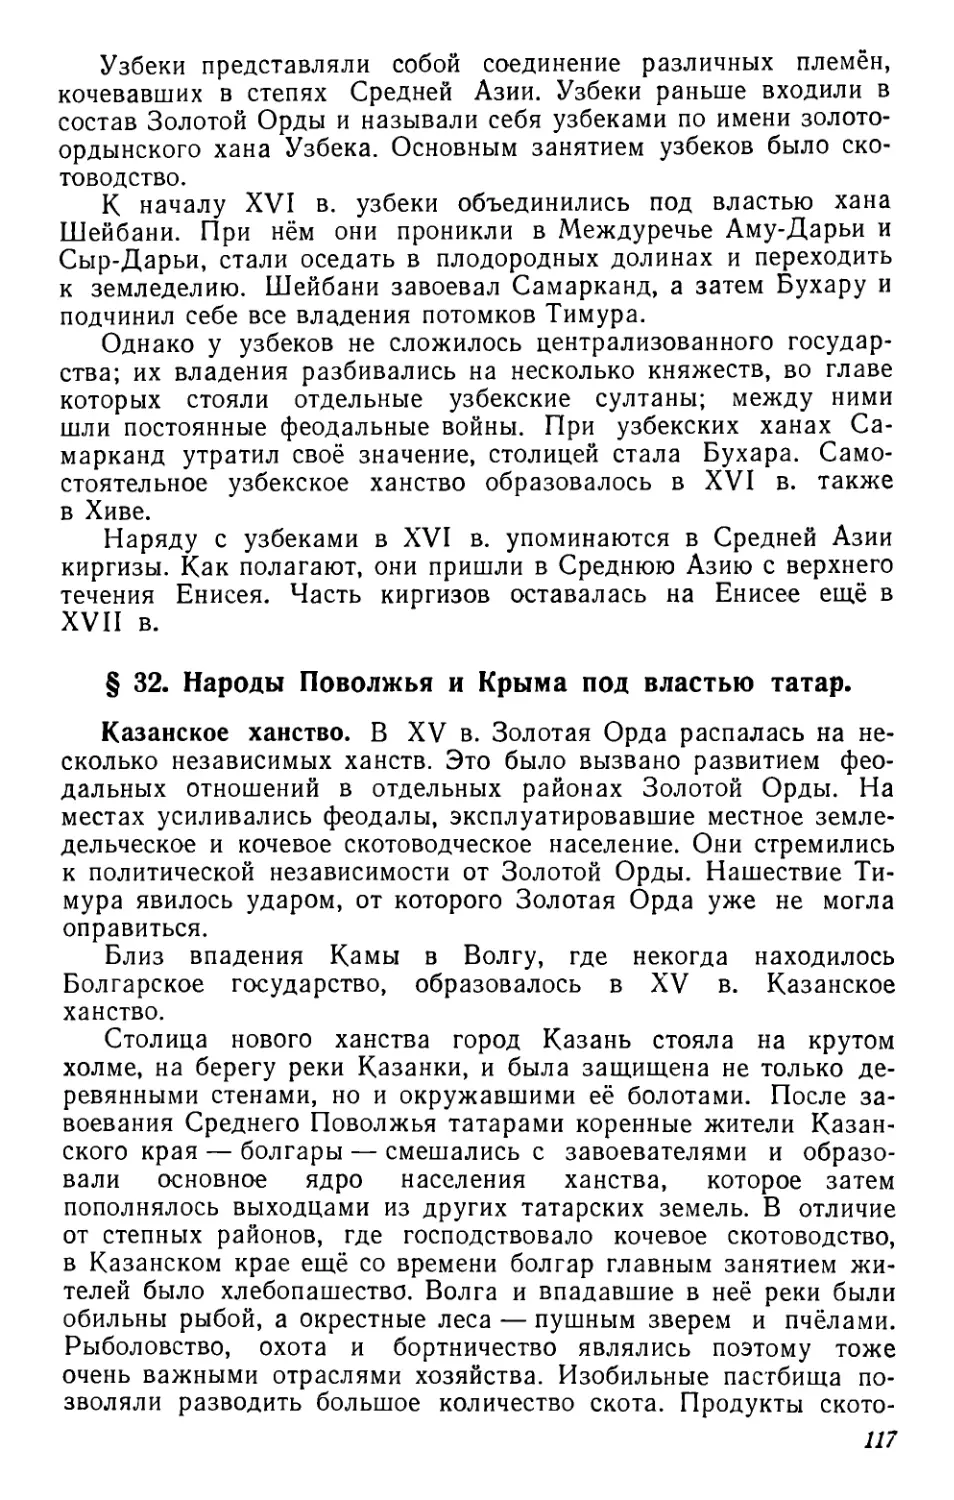 § 32. Народы Поволжья и Крыма под властью татар